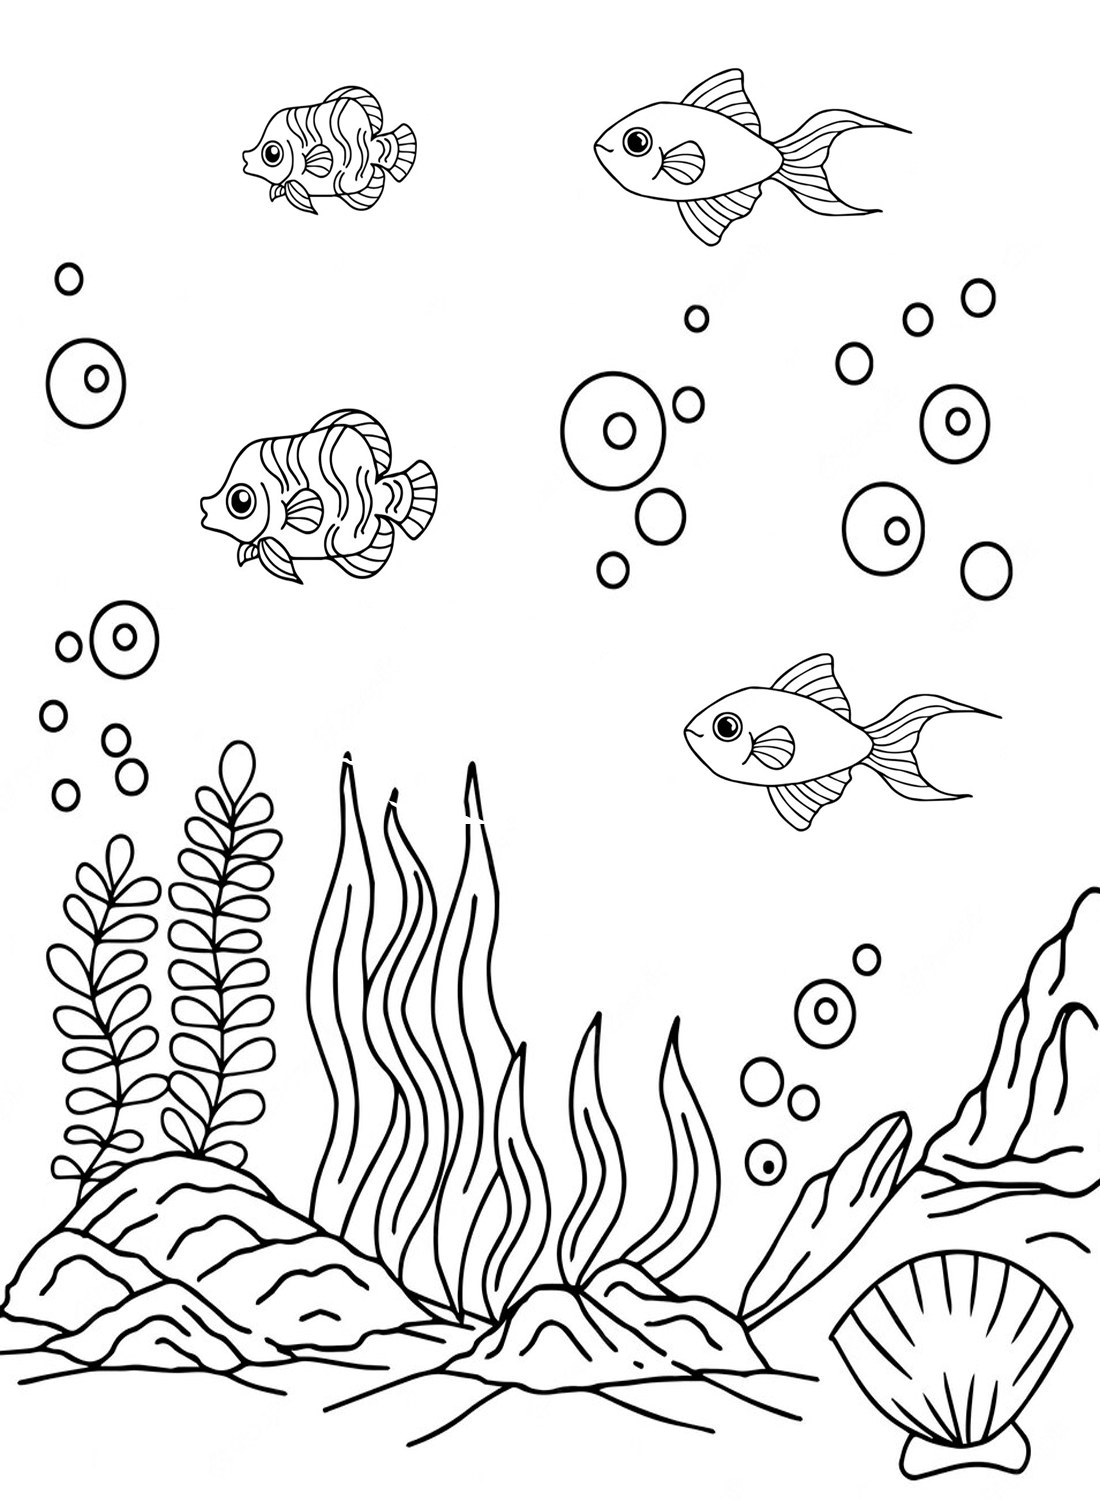 Pagina da colorare della barriera corallina